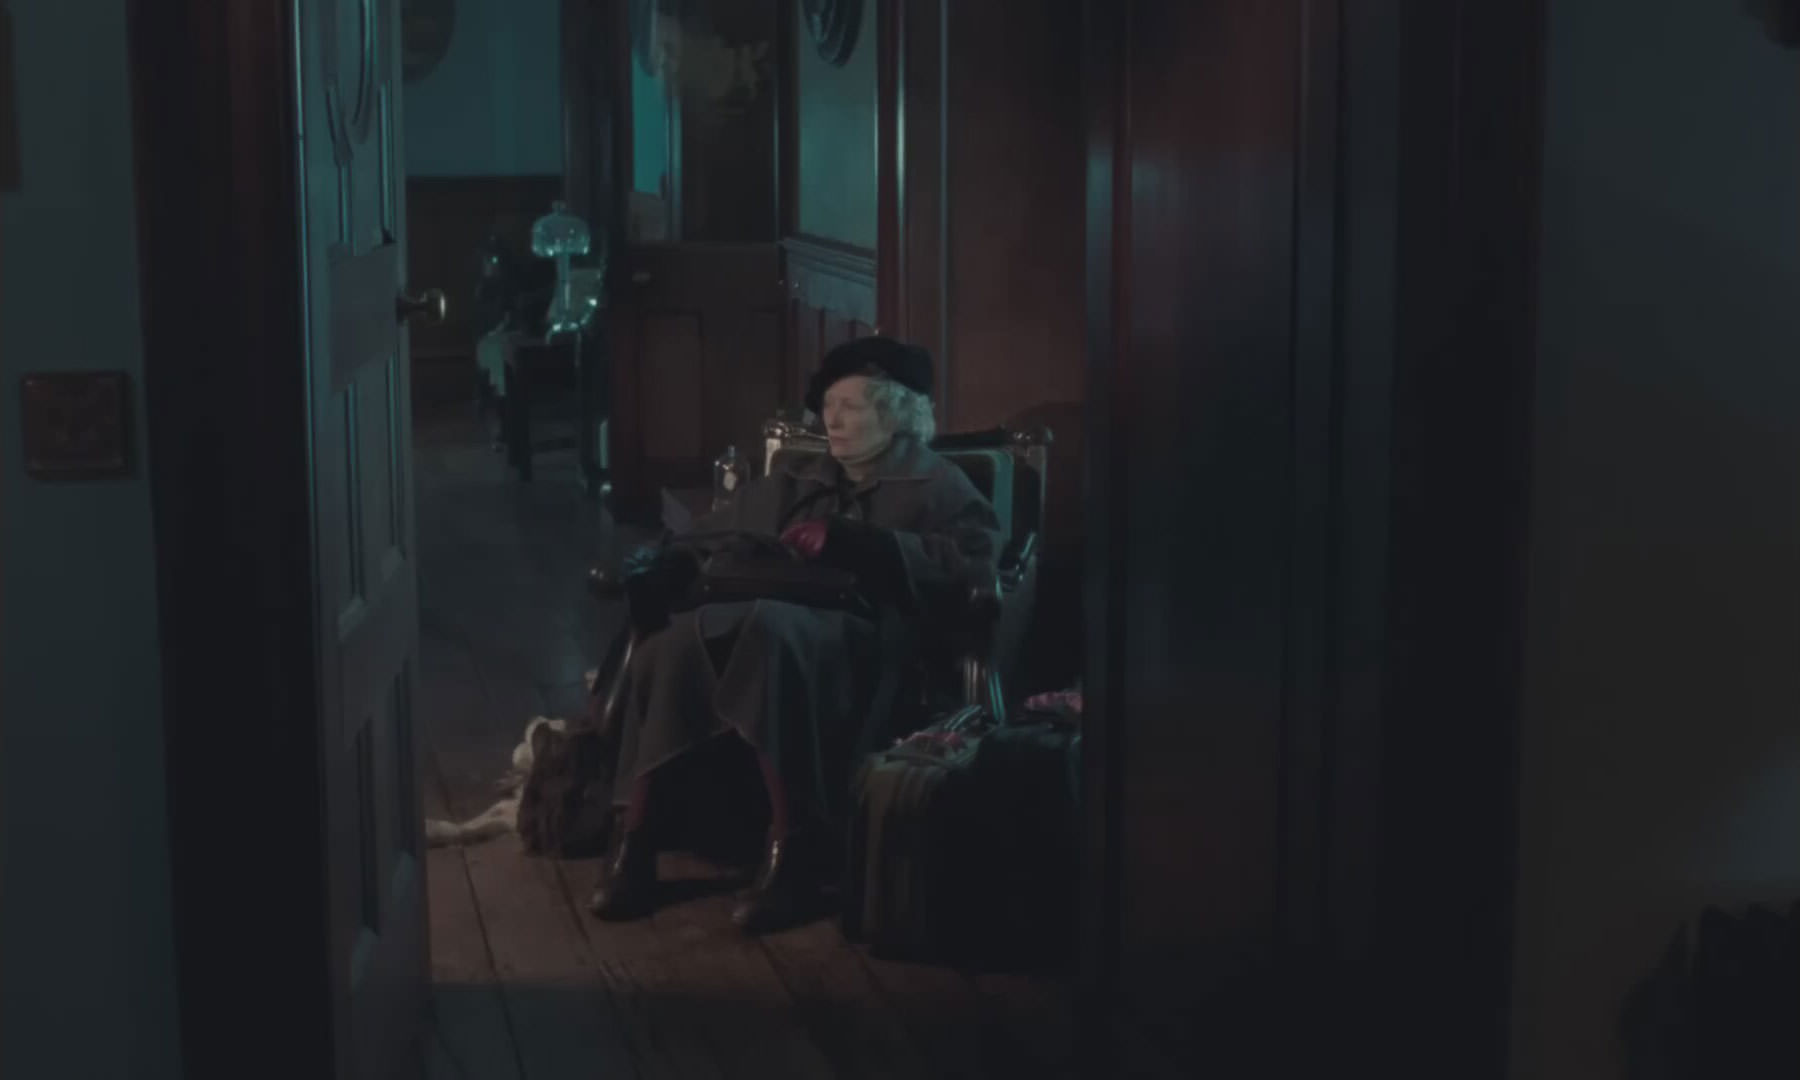 تیلدا سوینتون در نقش پیرزنی که روی صندلی نشسته است در صحنه ای از فیلم دختر ابدی به کارگردانی جوآنا هاگ.